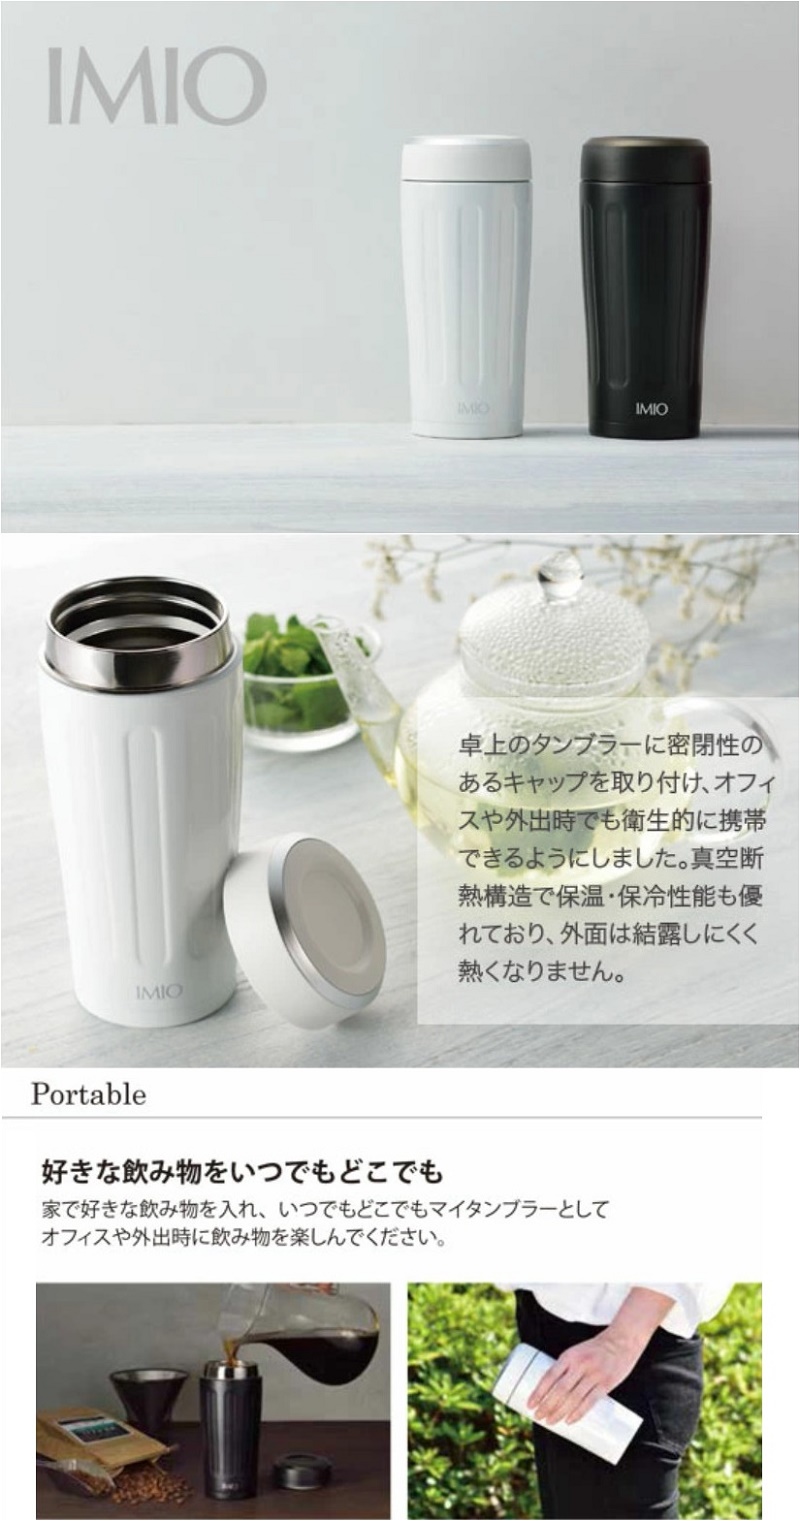 Ly giữ nhiệt cao cấp Imio Portable Tumbler - Hàng nội địa Nhật Bản, nhập khẩu chính hãng